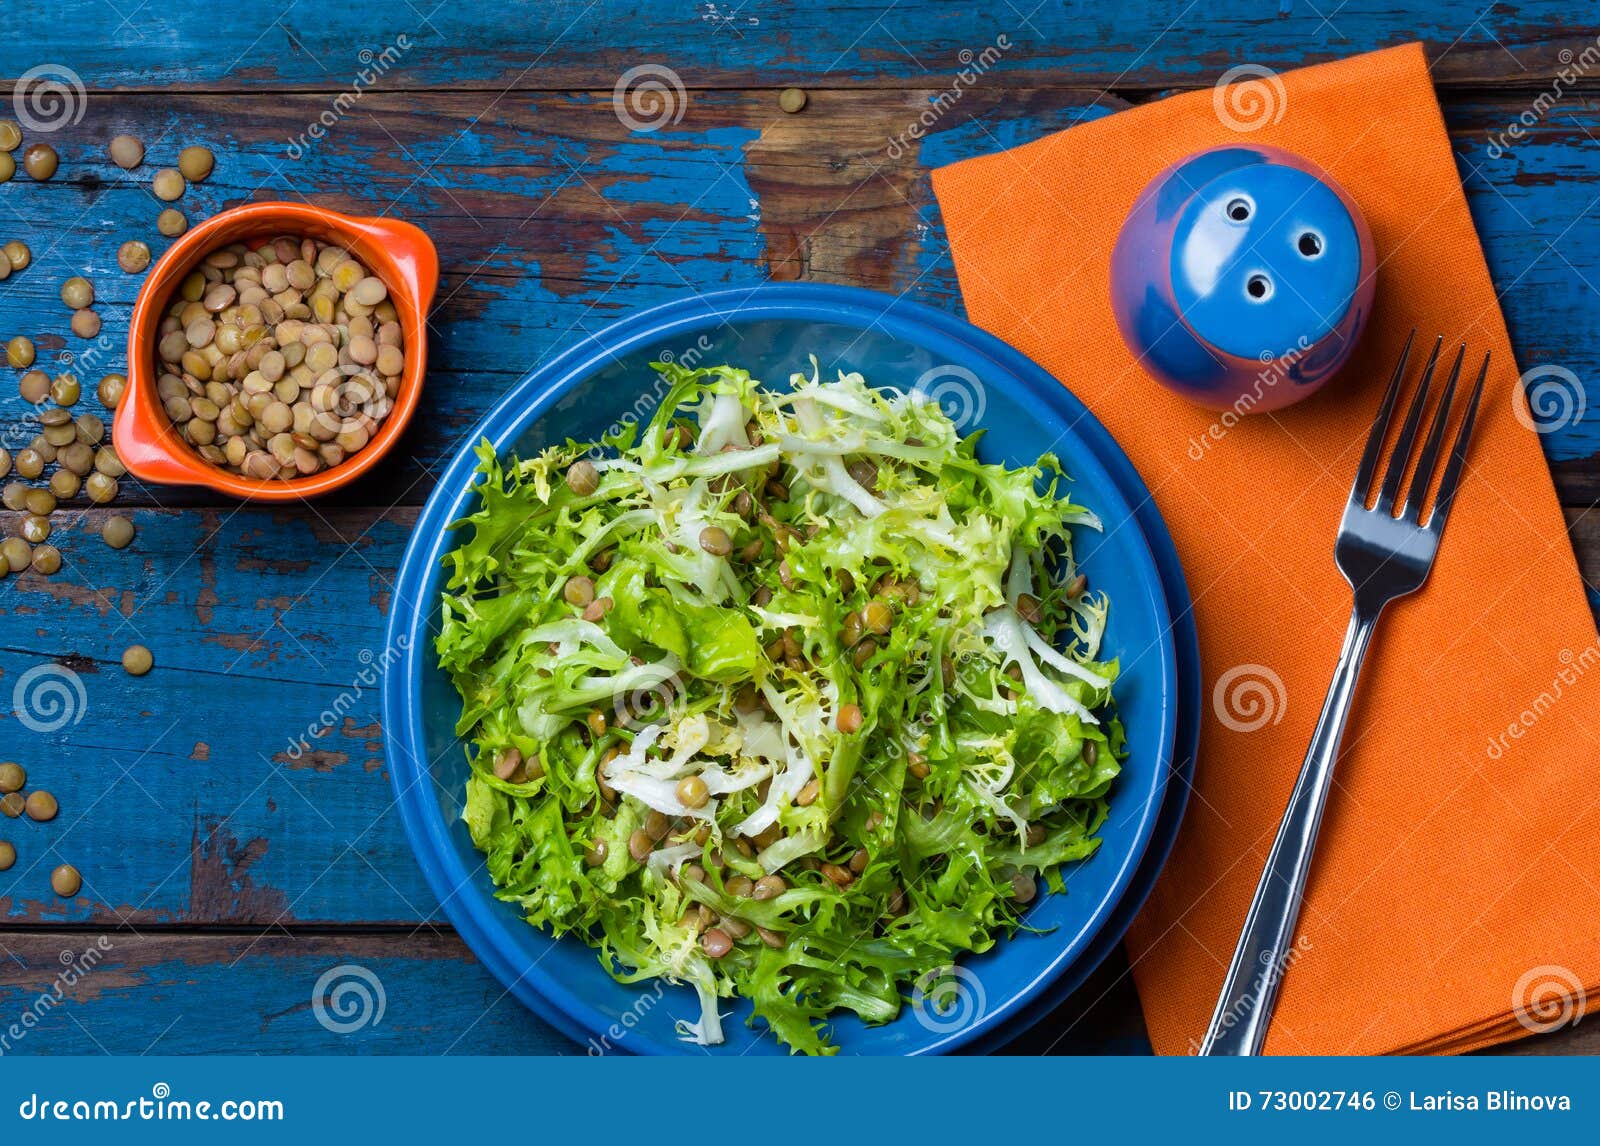 vegetarian salad with lettuce and lentil. colorful blue orange background